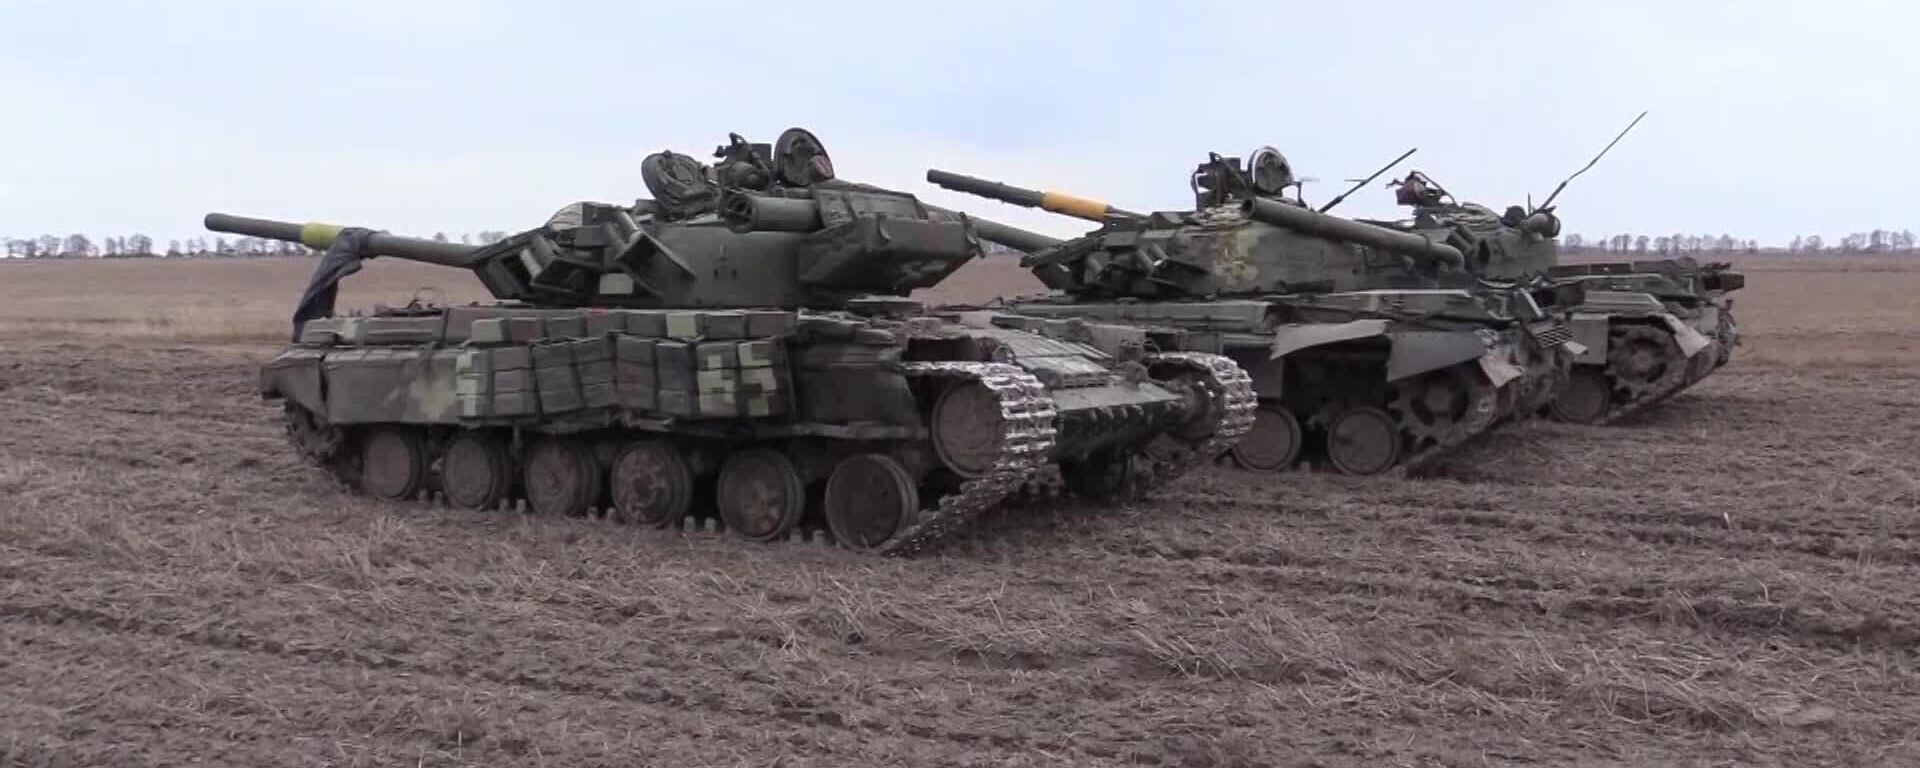 Tanques T-64 das Forças Armadas ucranianas capturados pelas Forças Armadas da Rússia, na região de Chernigov, Ucrânia, foto publicada em 1º de abril de 2022 - Sputnik Brasil, 1920, 04.04.2022